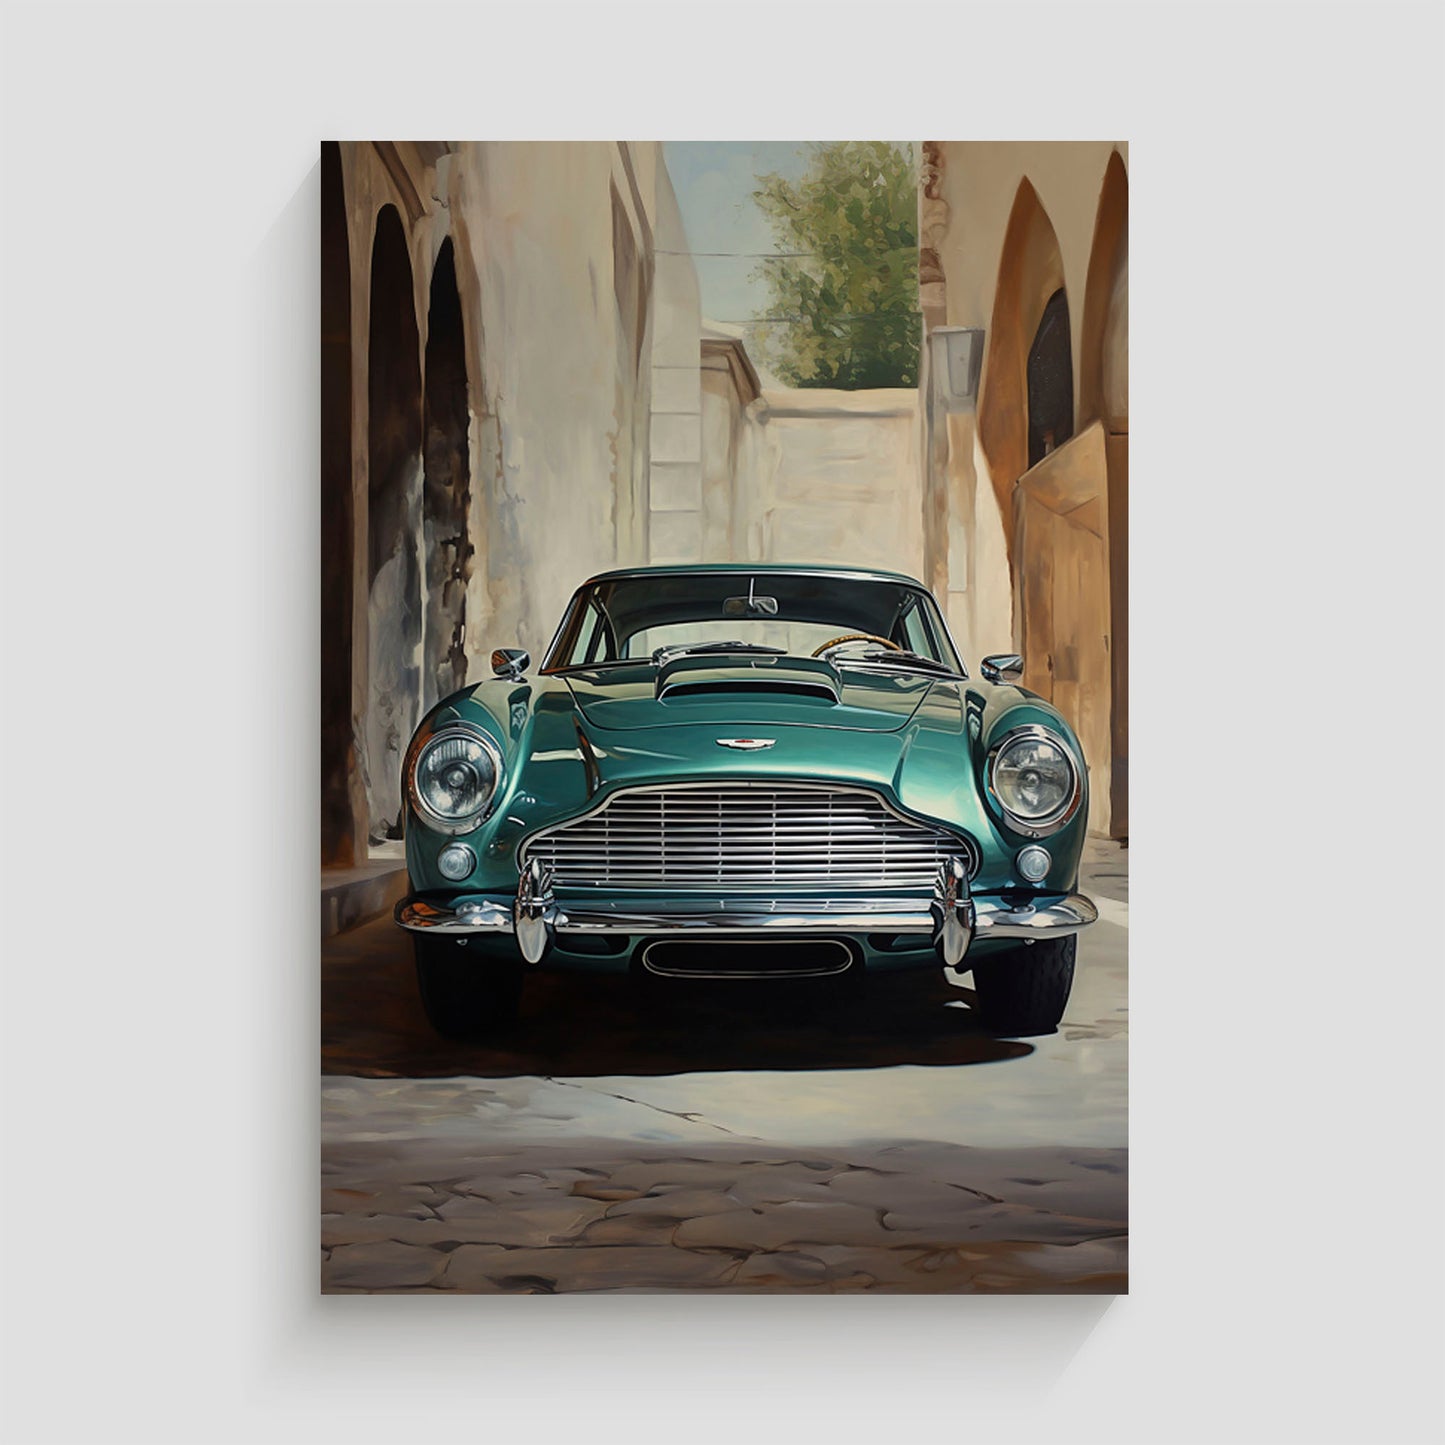 Ilustración de un automóvil clásico Aston Martin en color verde, destacando sus detalles elegantes y sofisticados